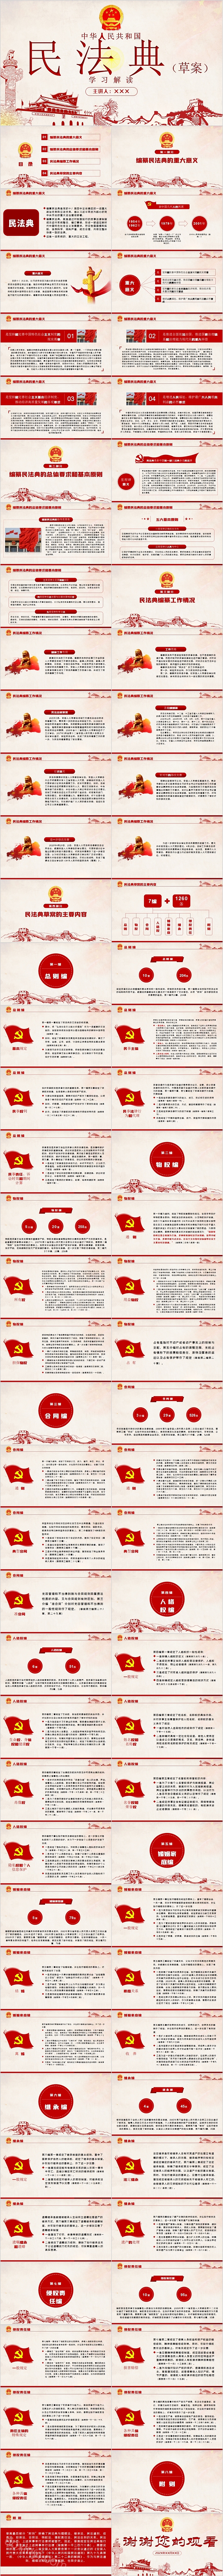 简约大气中华人民共和国民法典学习解读PPT模板